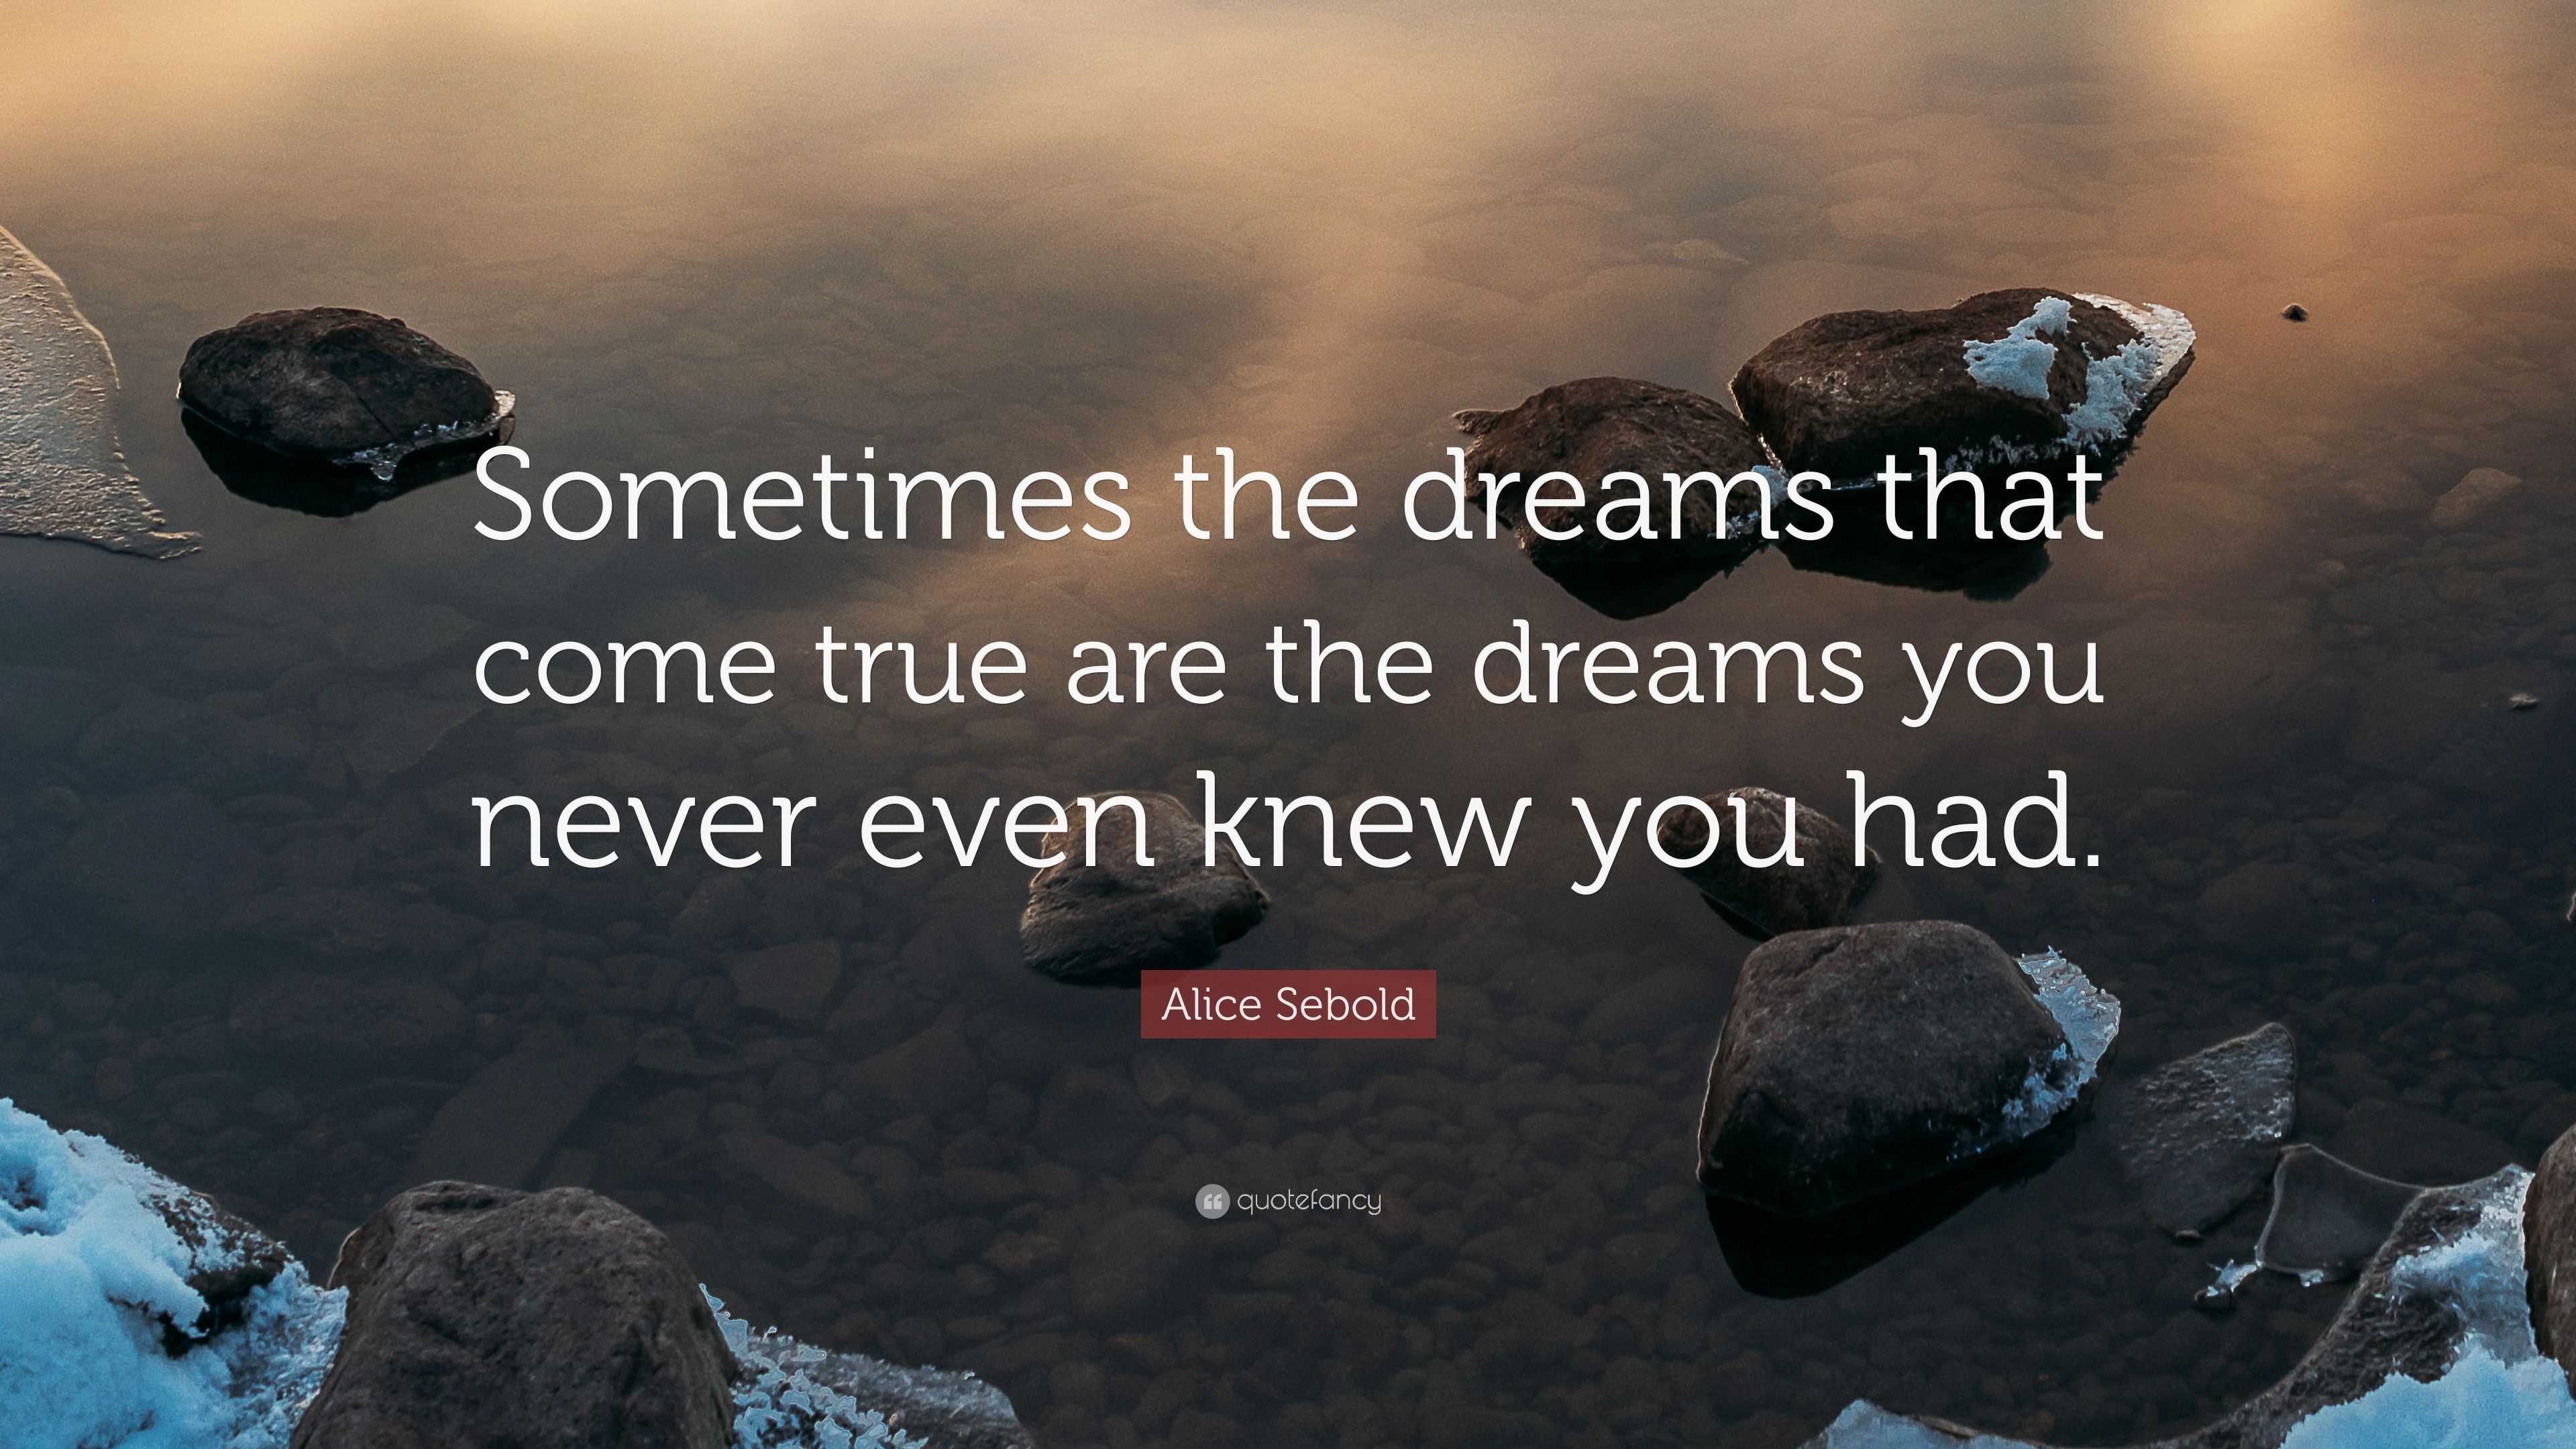 Alice Sebold Quote “sometimes The Dreams That Come True Are The Dreams